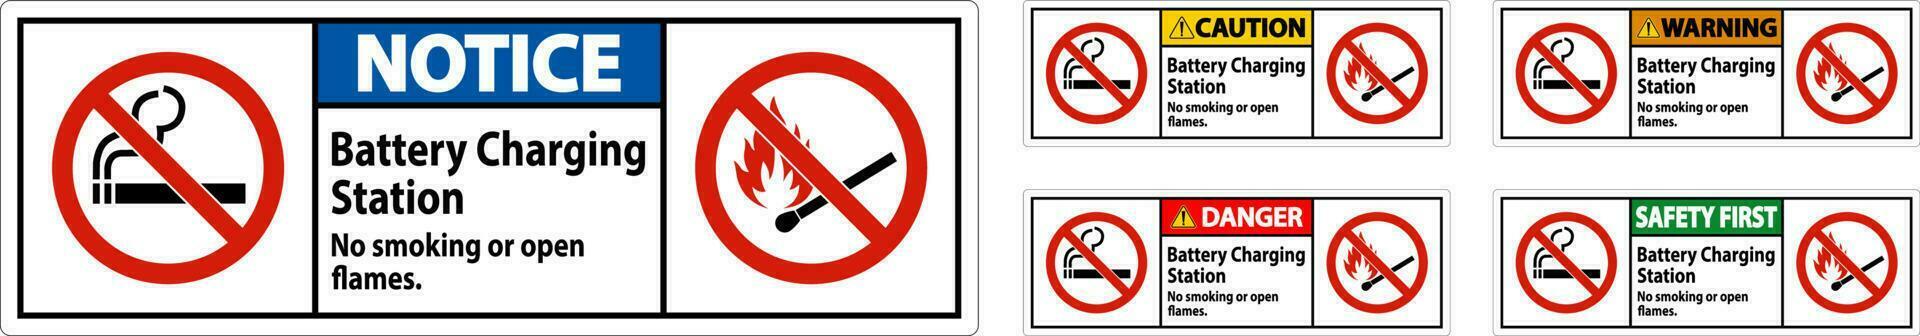 Cuidado placa bateria cobrando estação, não fumar ou aberto chamas vetor